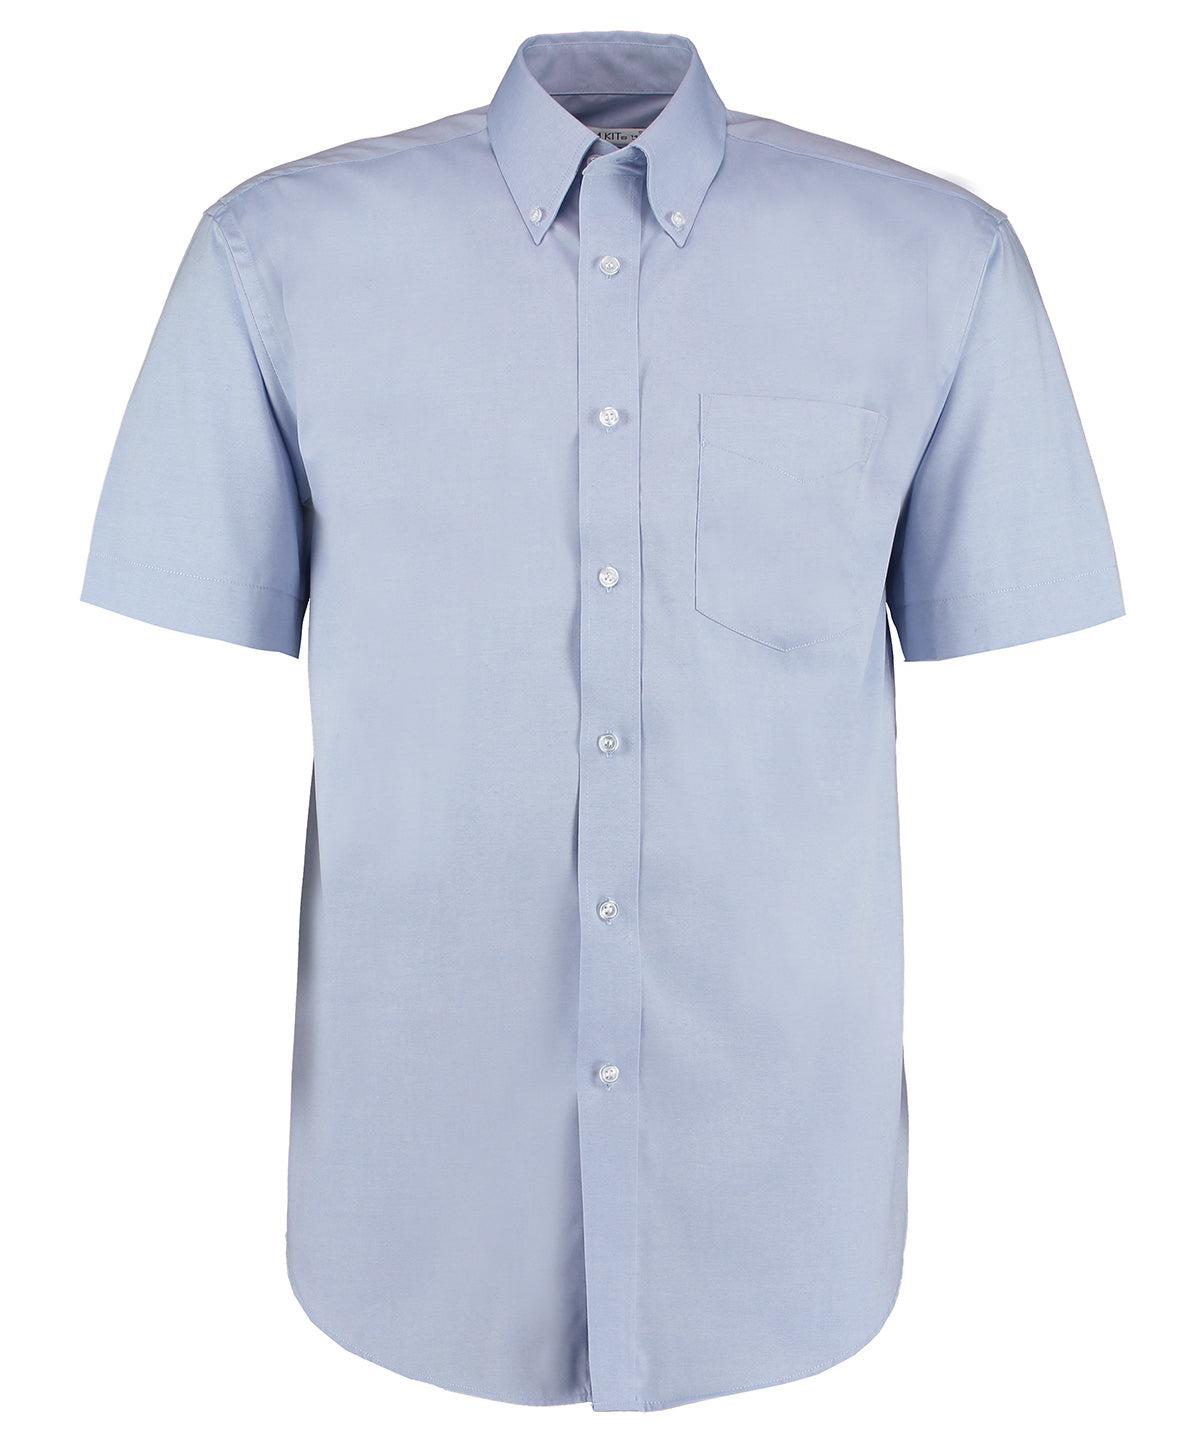 Kustom Kit Corporate Oxford shirt short-sleeved  Light Blue